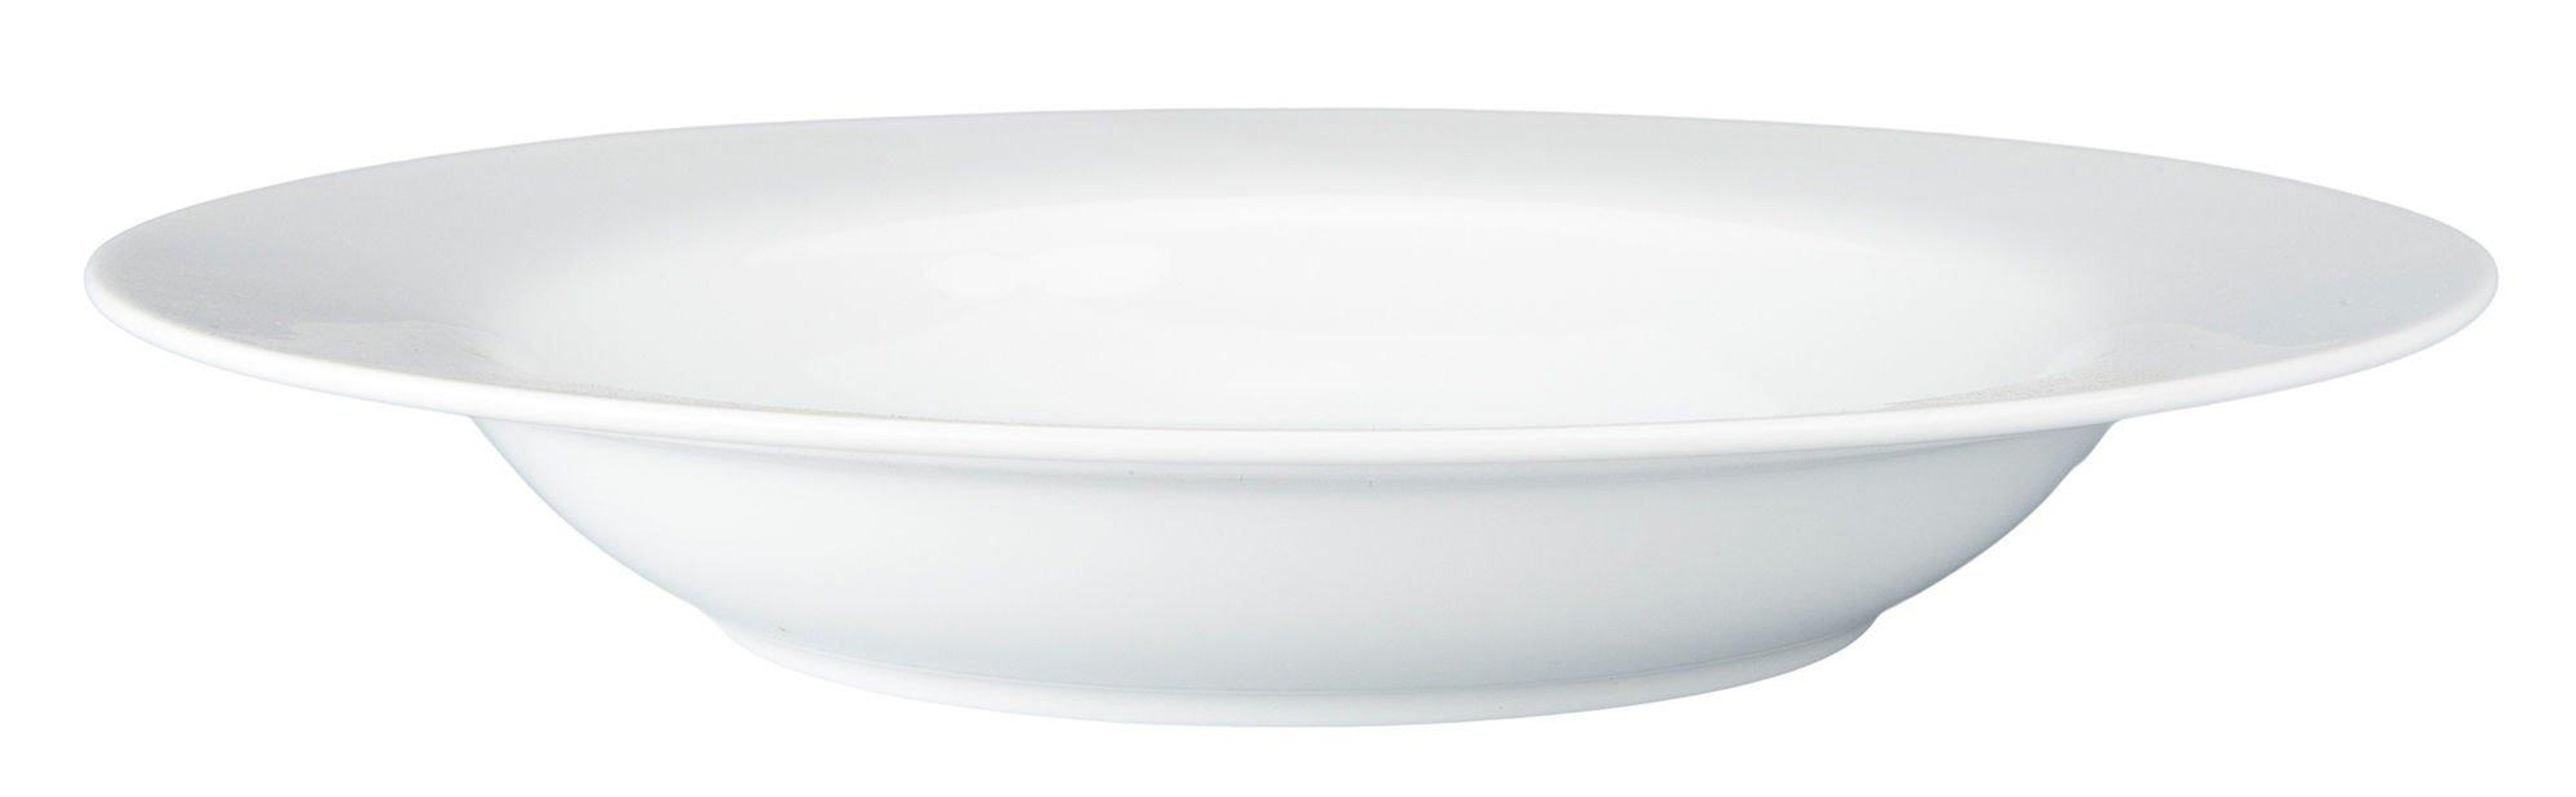 BIA Cordon Bleu, Inc. 9'' Rim Soup Bowl ||P000148604||